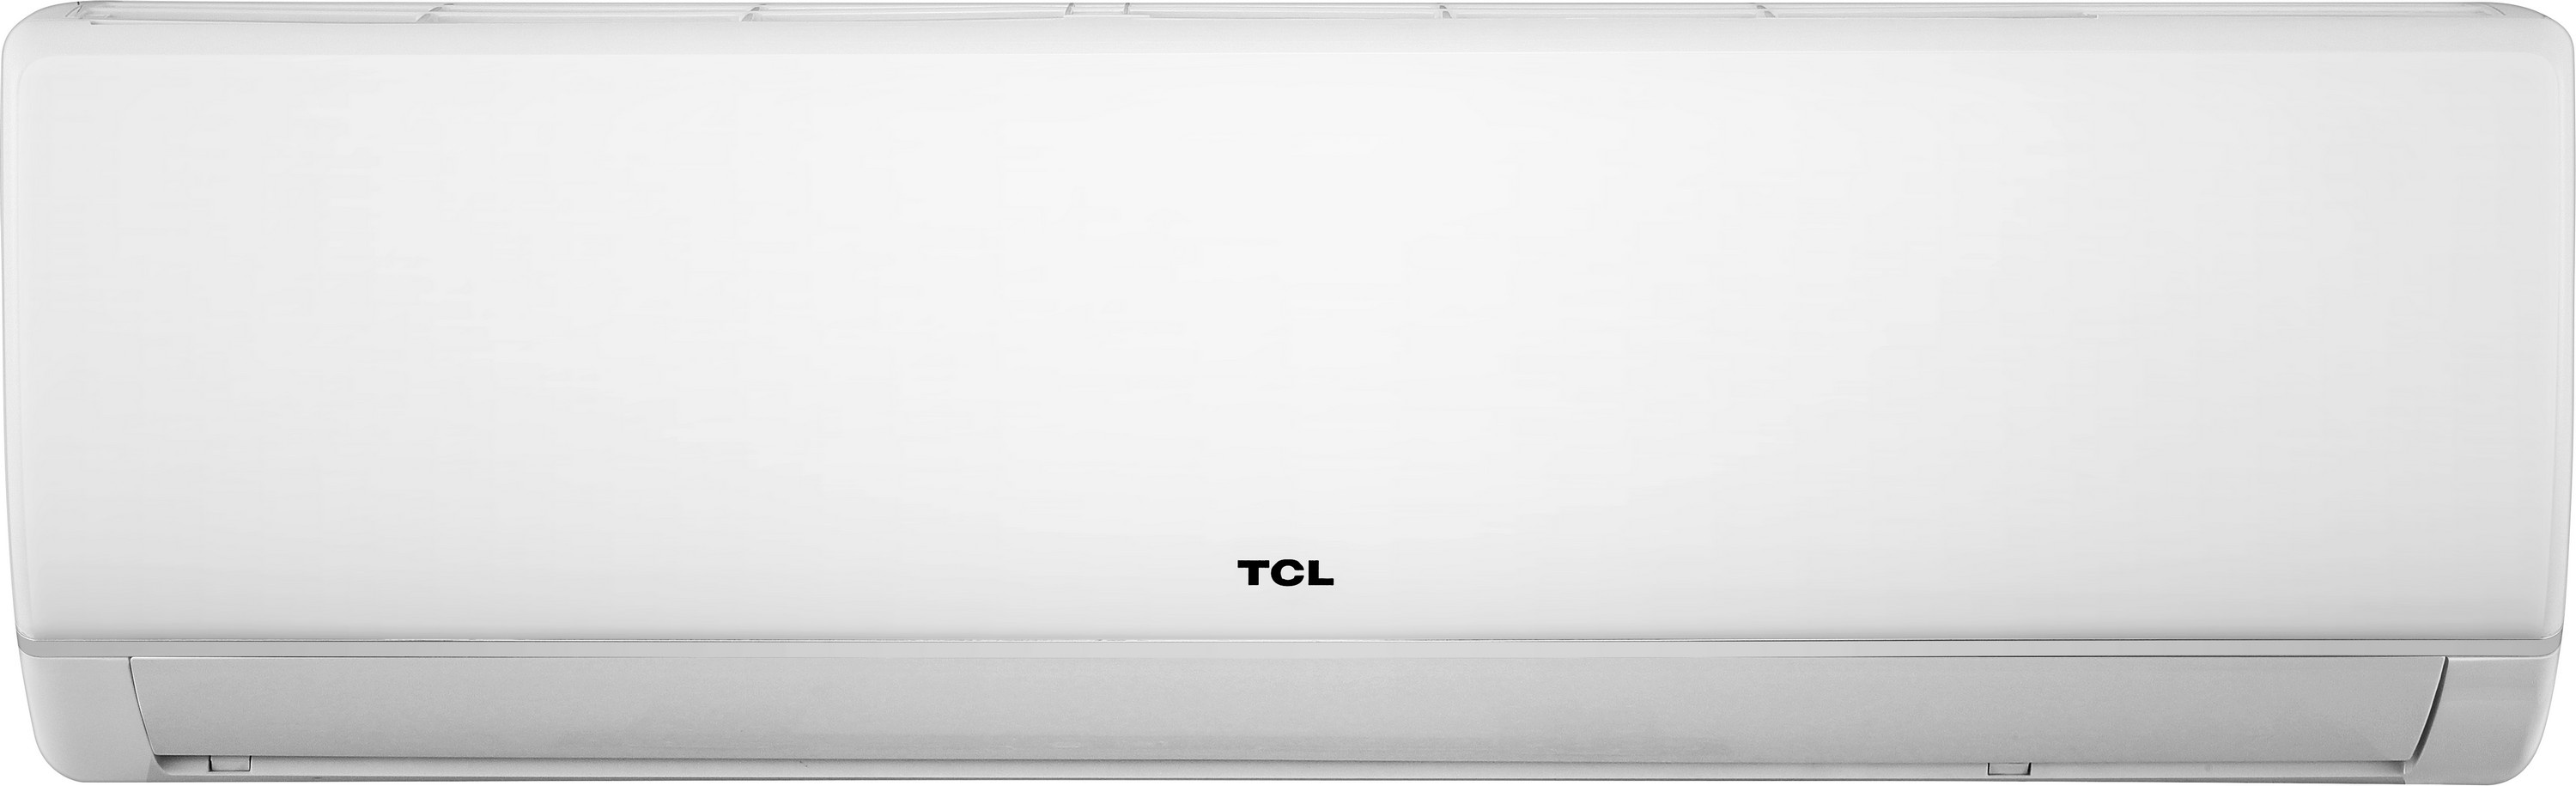 Кондиционер сплит-система TCL Miracle Inverter TAC-12CHSA/VB цена 0 грн - фотография 2